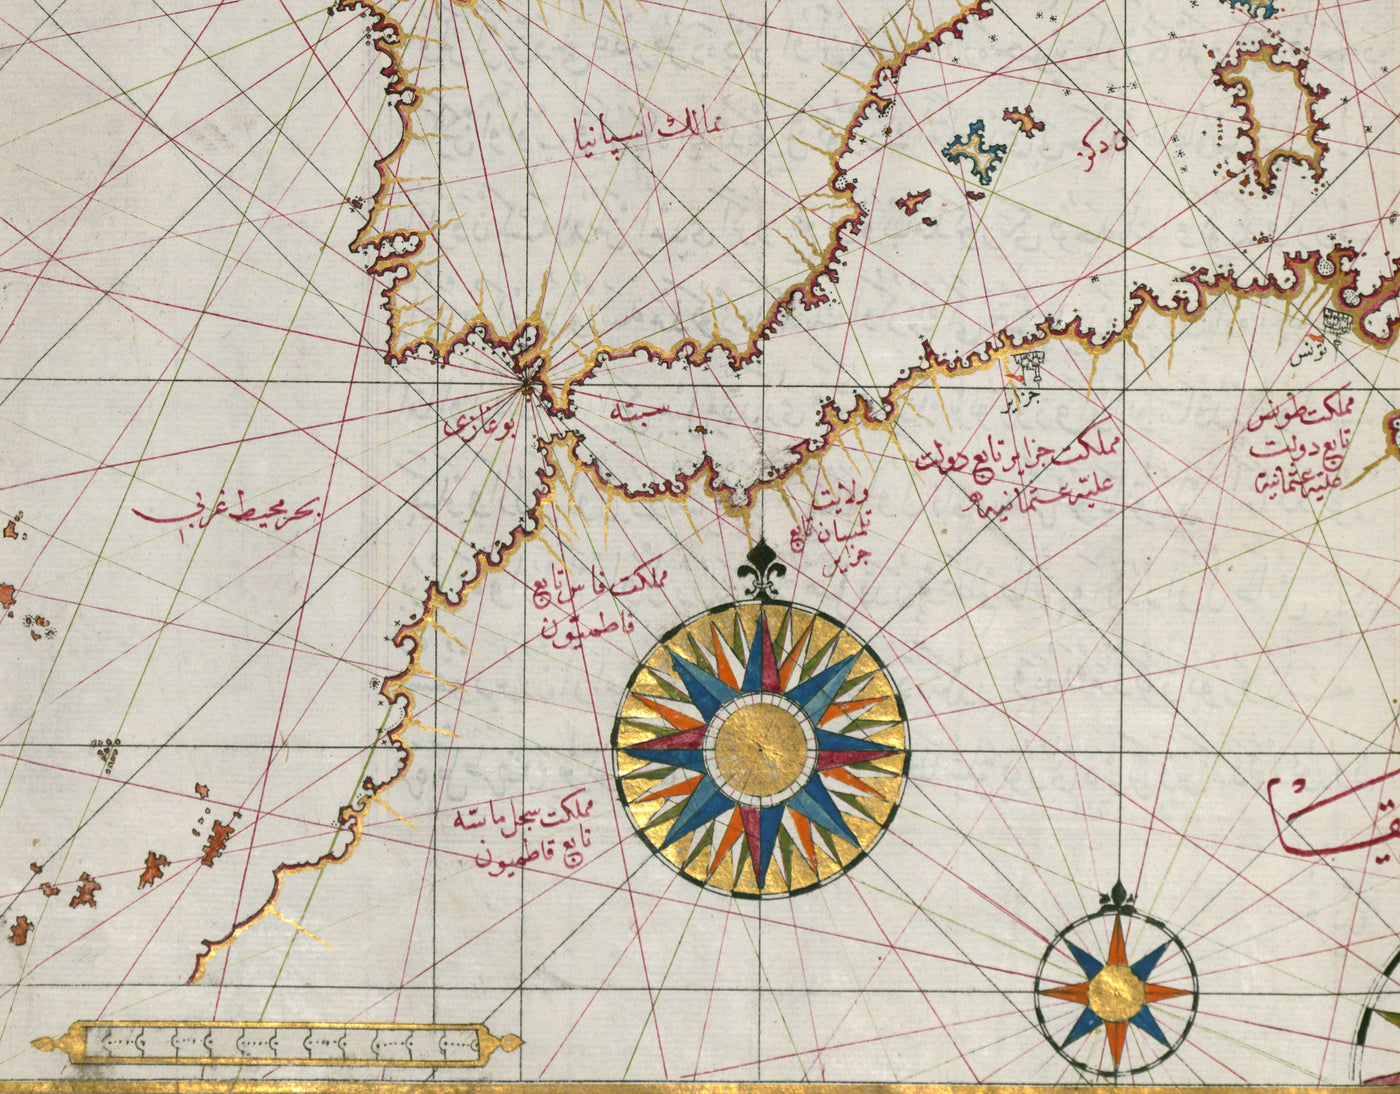 Antiguo mapa árabe de Europa en 1525 por Piri Reis - Francia, España, Reino Unido, Turquía, Alemania